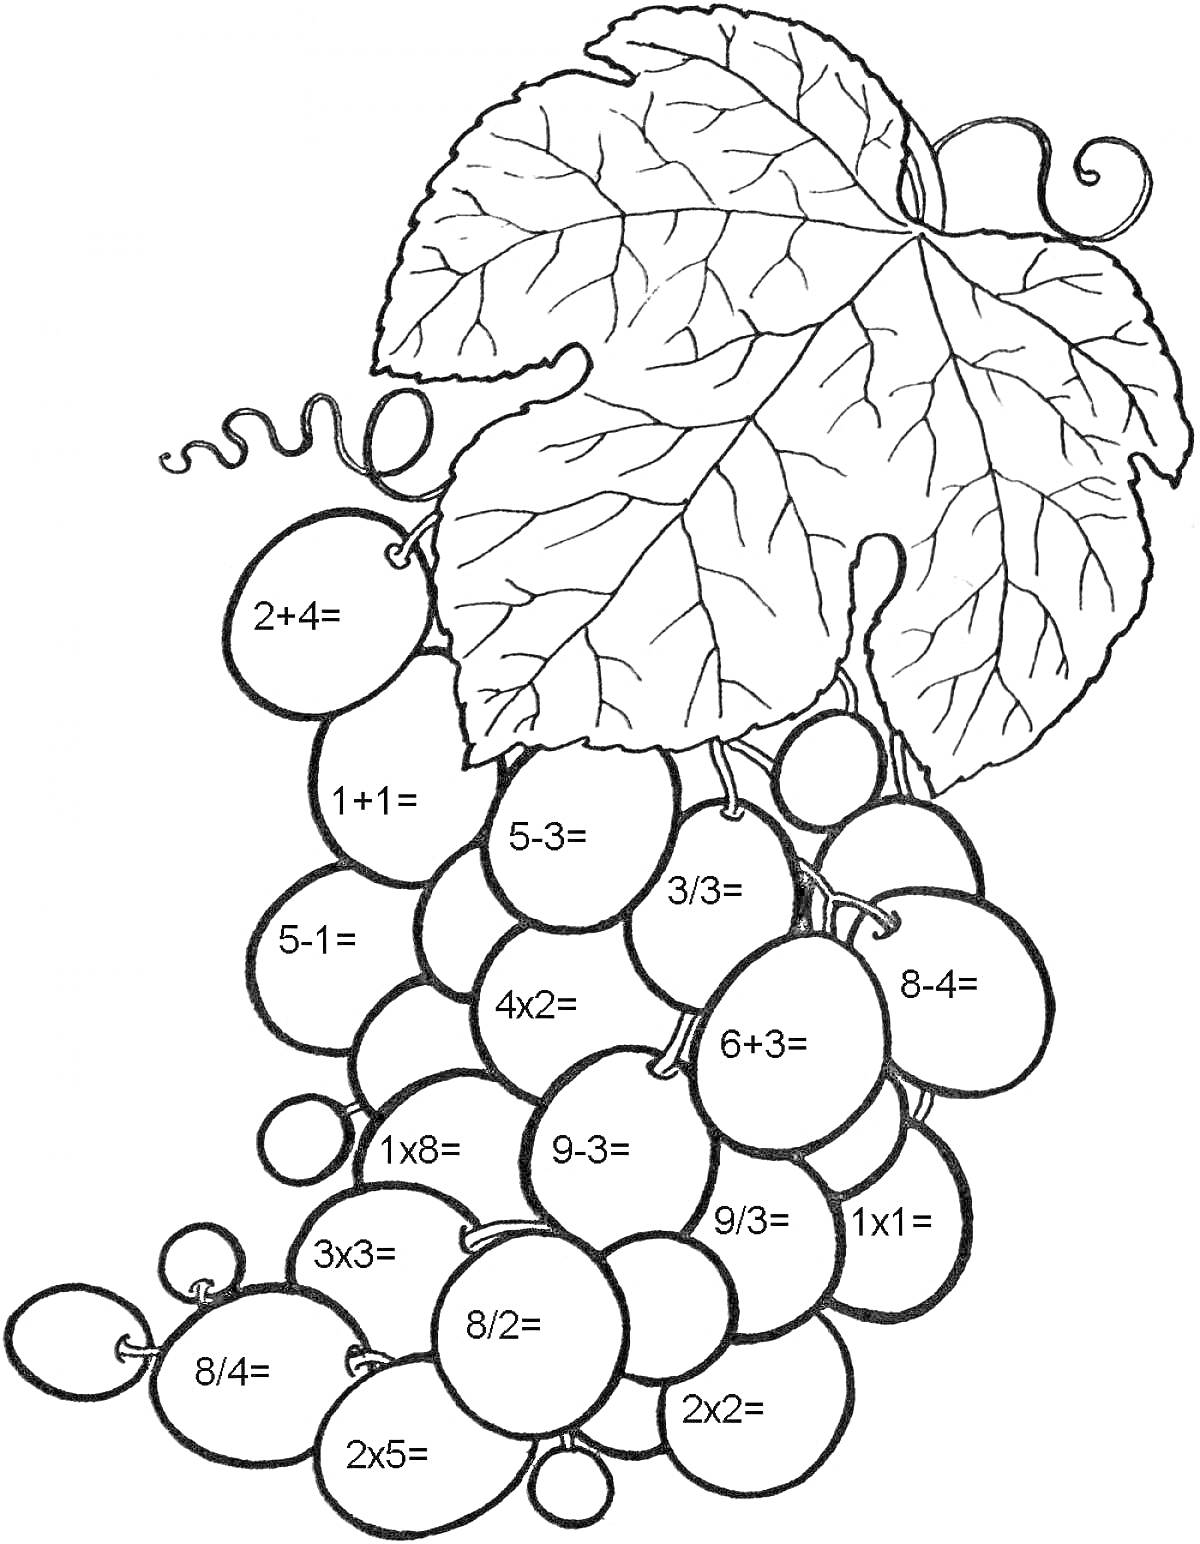 РаскраскаВиноградная гроздь с примерами на сложение, вычитание и умножение